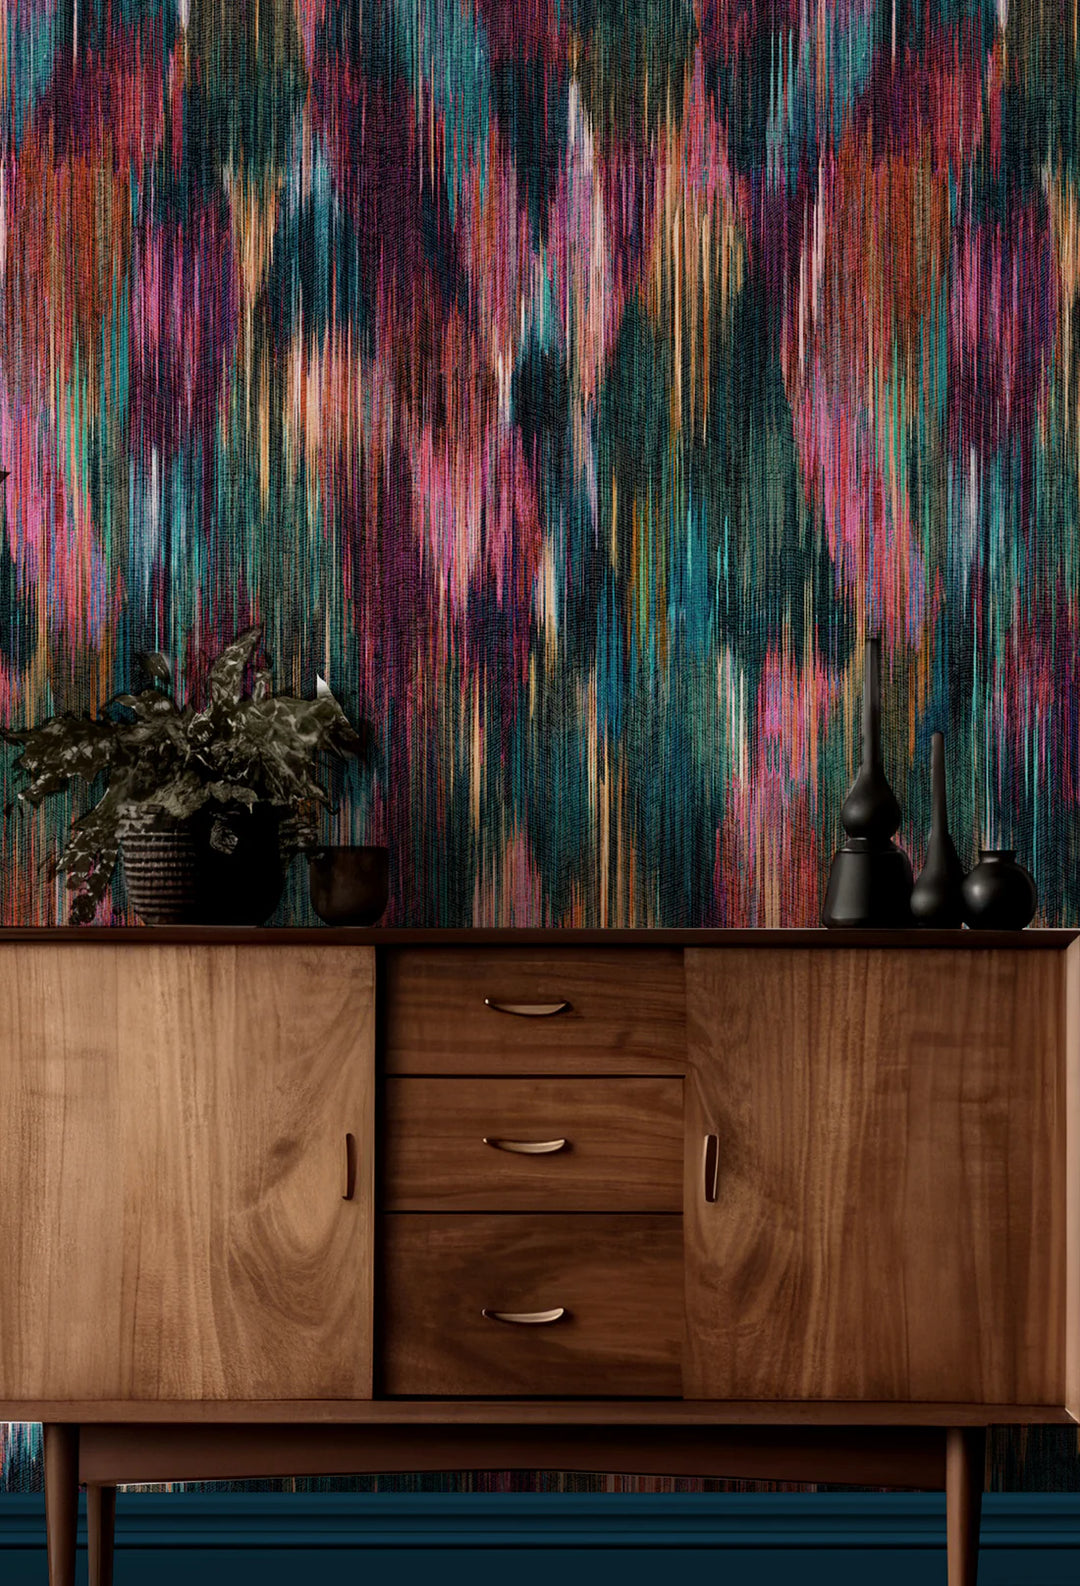 Victoria-Sanders-Spectre-Ikat-geometric-Wallpaper-Jewel-ikat -greens-teal-purples-rust